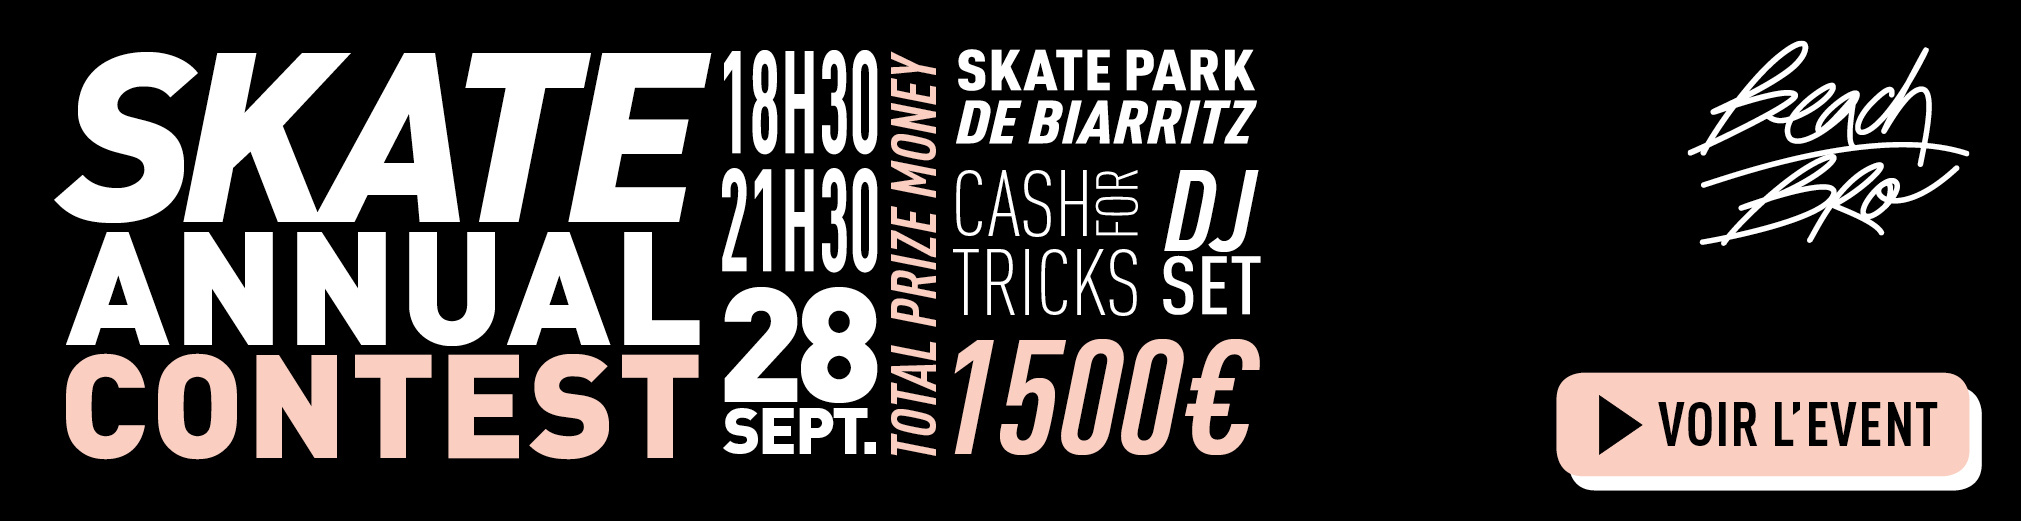 28 septembre 2017, skate annual contest